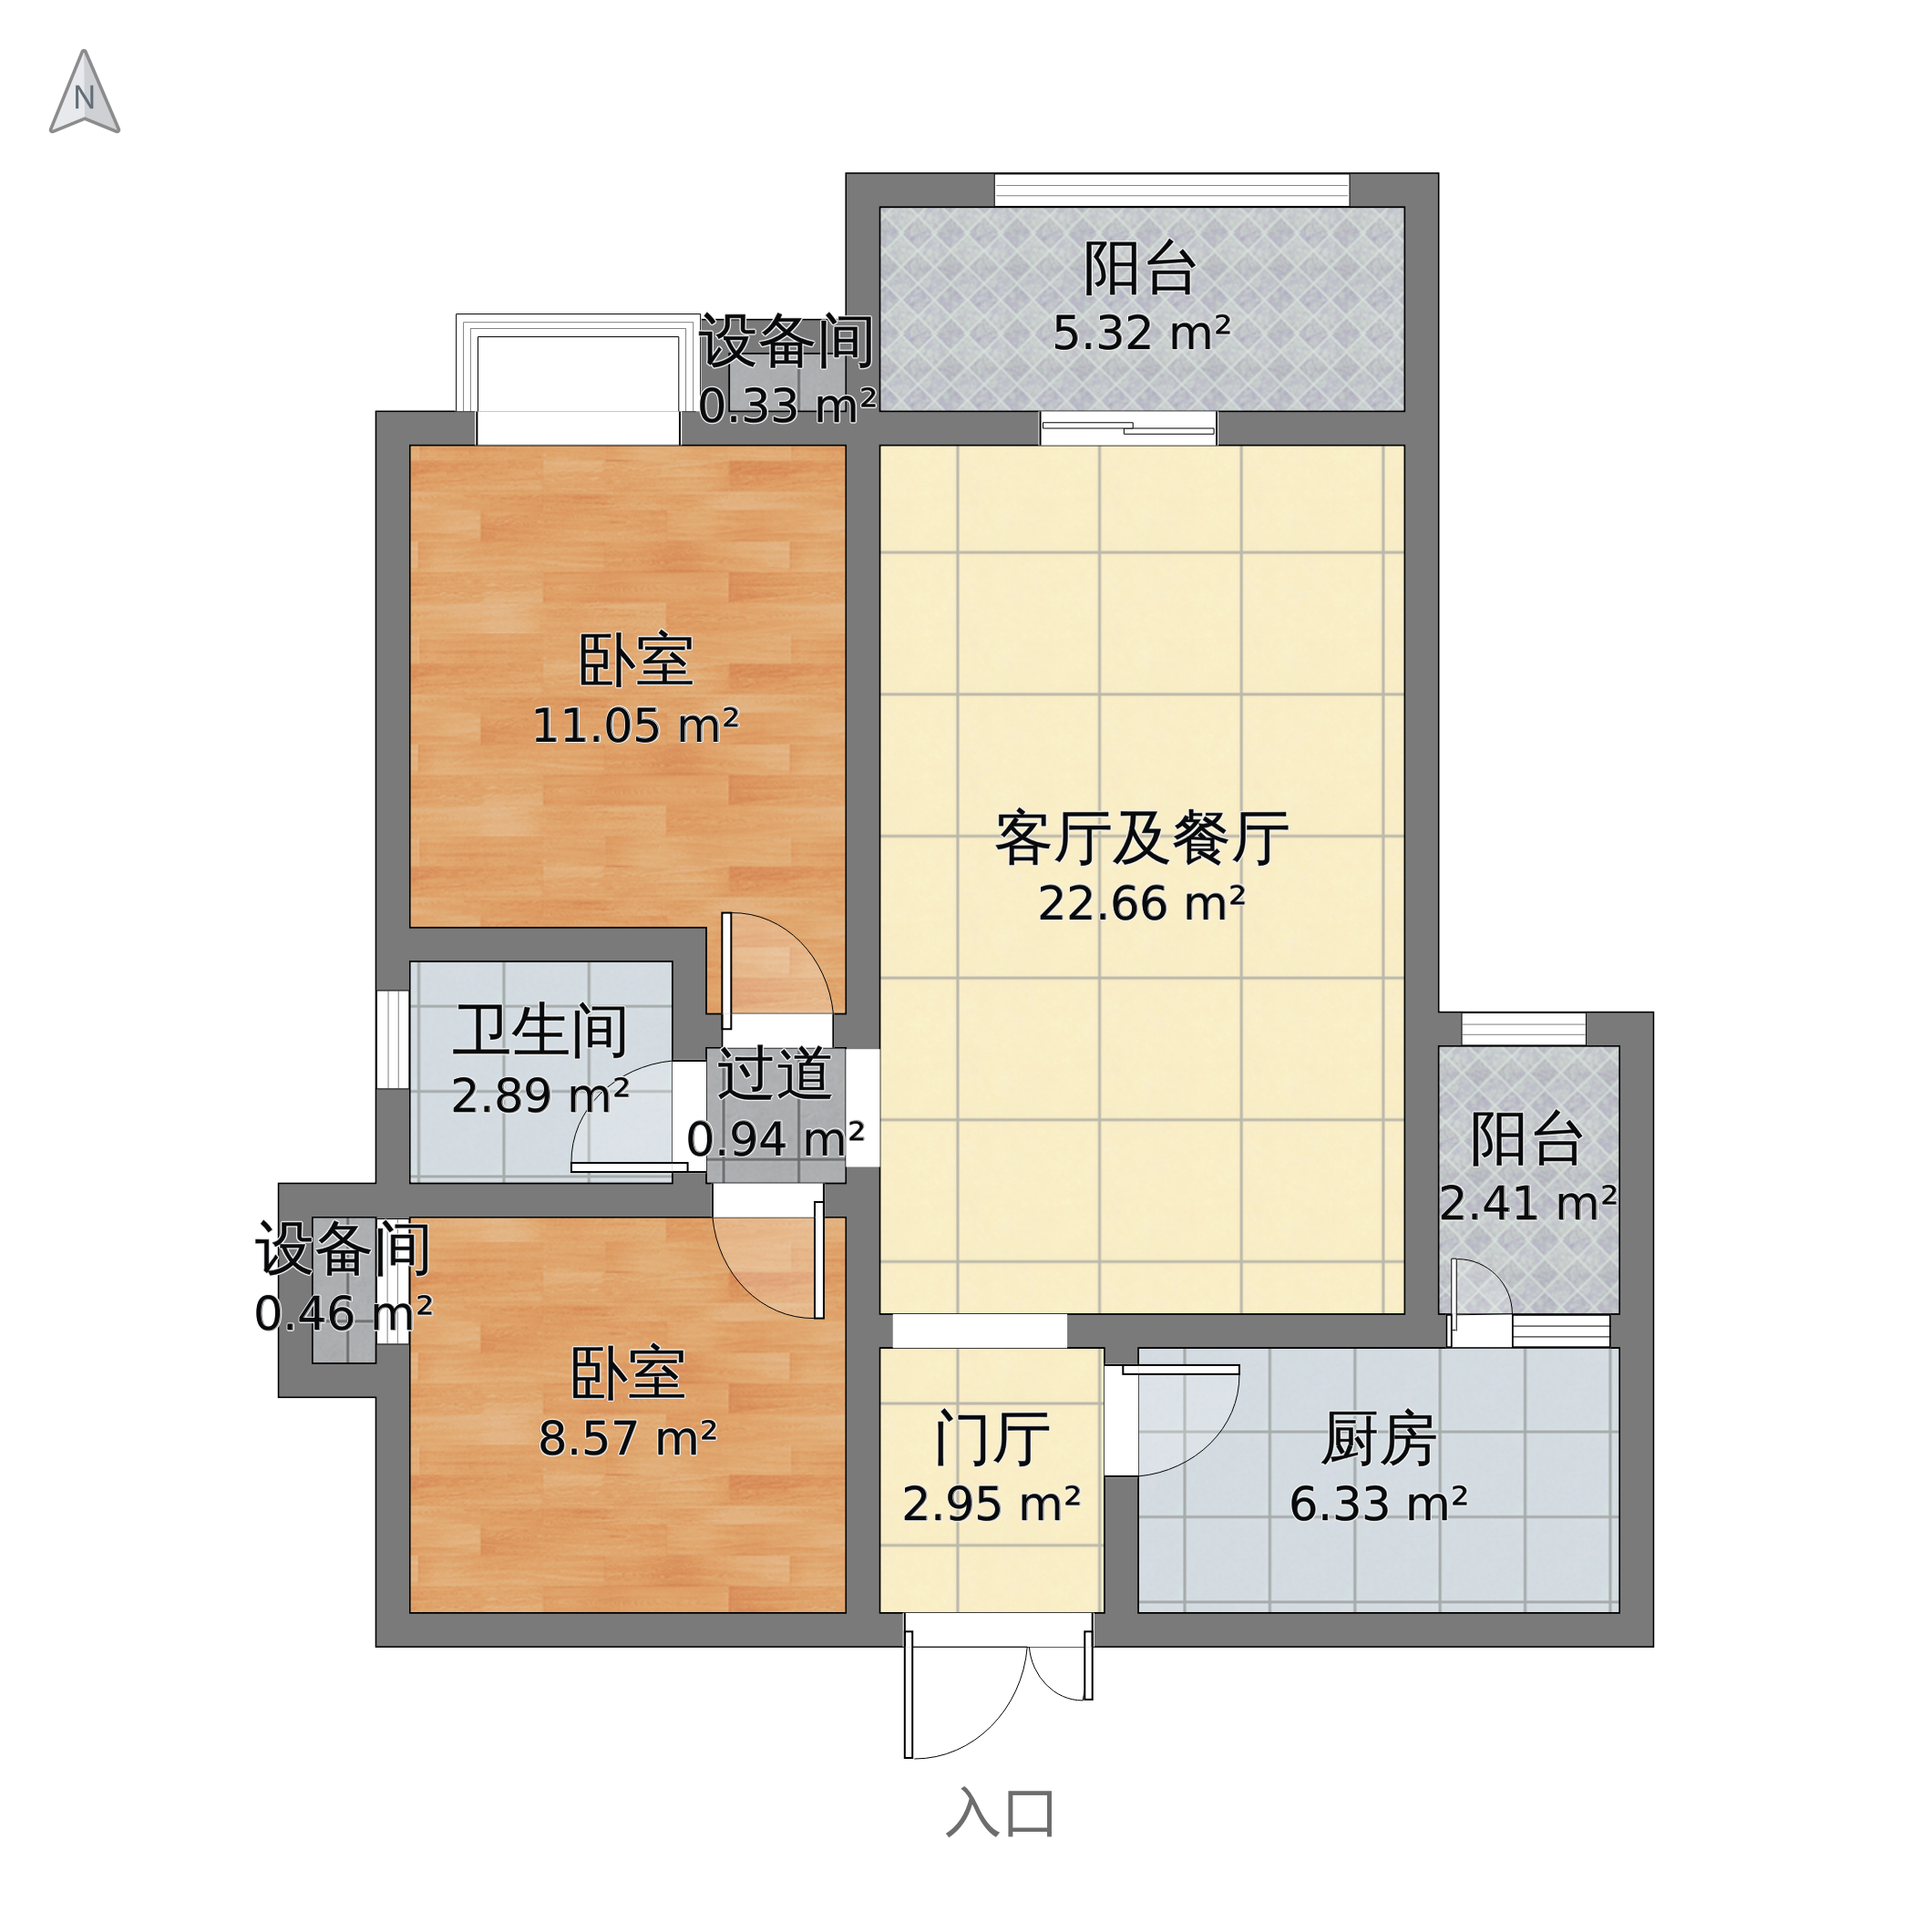 鹤翔豪苑2室1厅1卫 118m05